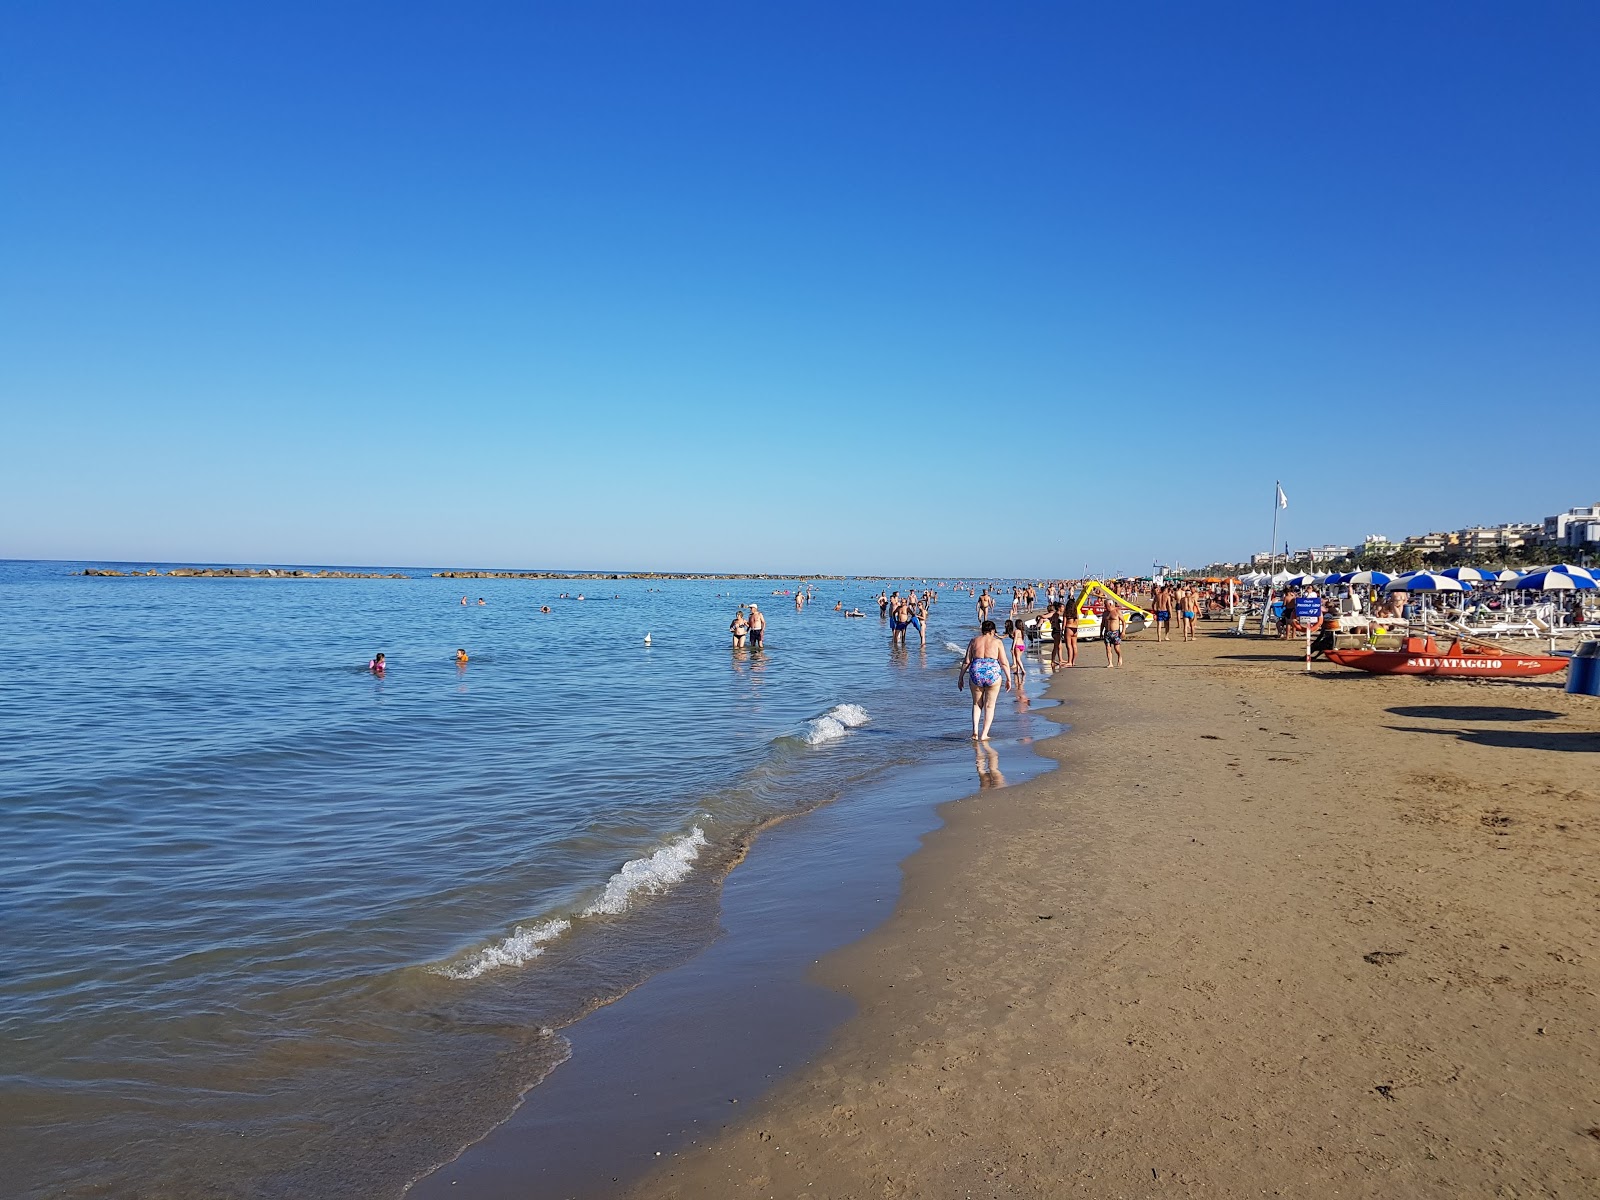 Spiaggia Campo Europa'in fotoğrafı - Çocuklu aile gezginleri için önerilir